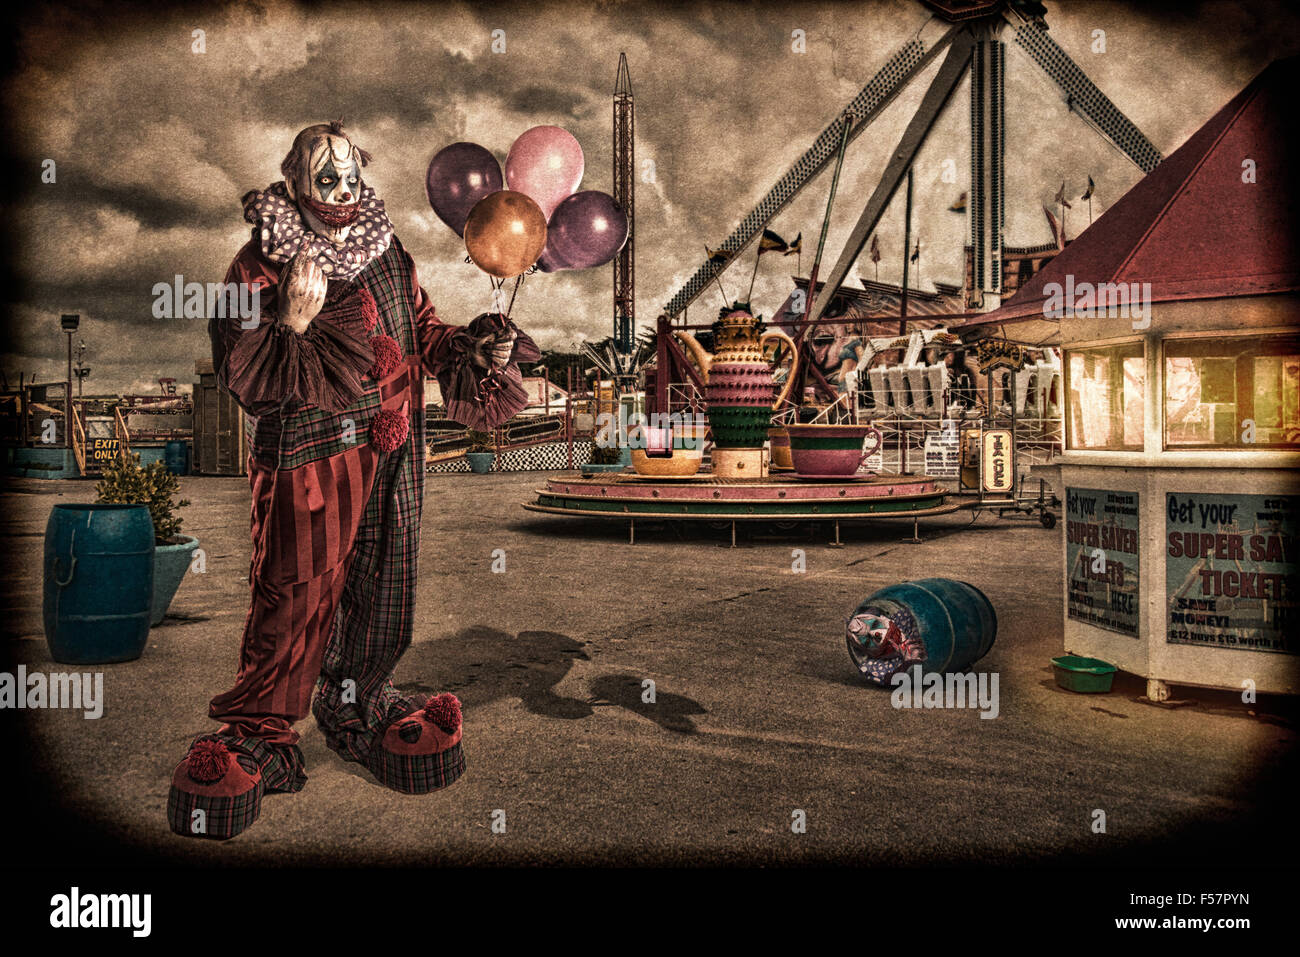 Scary/creepy clown à style vintage Banque D'Images